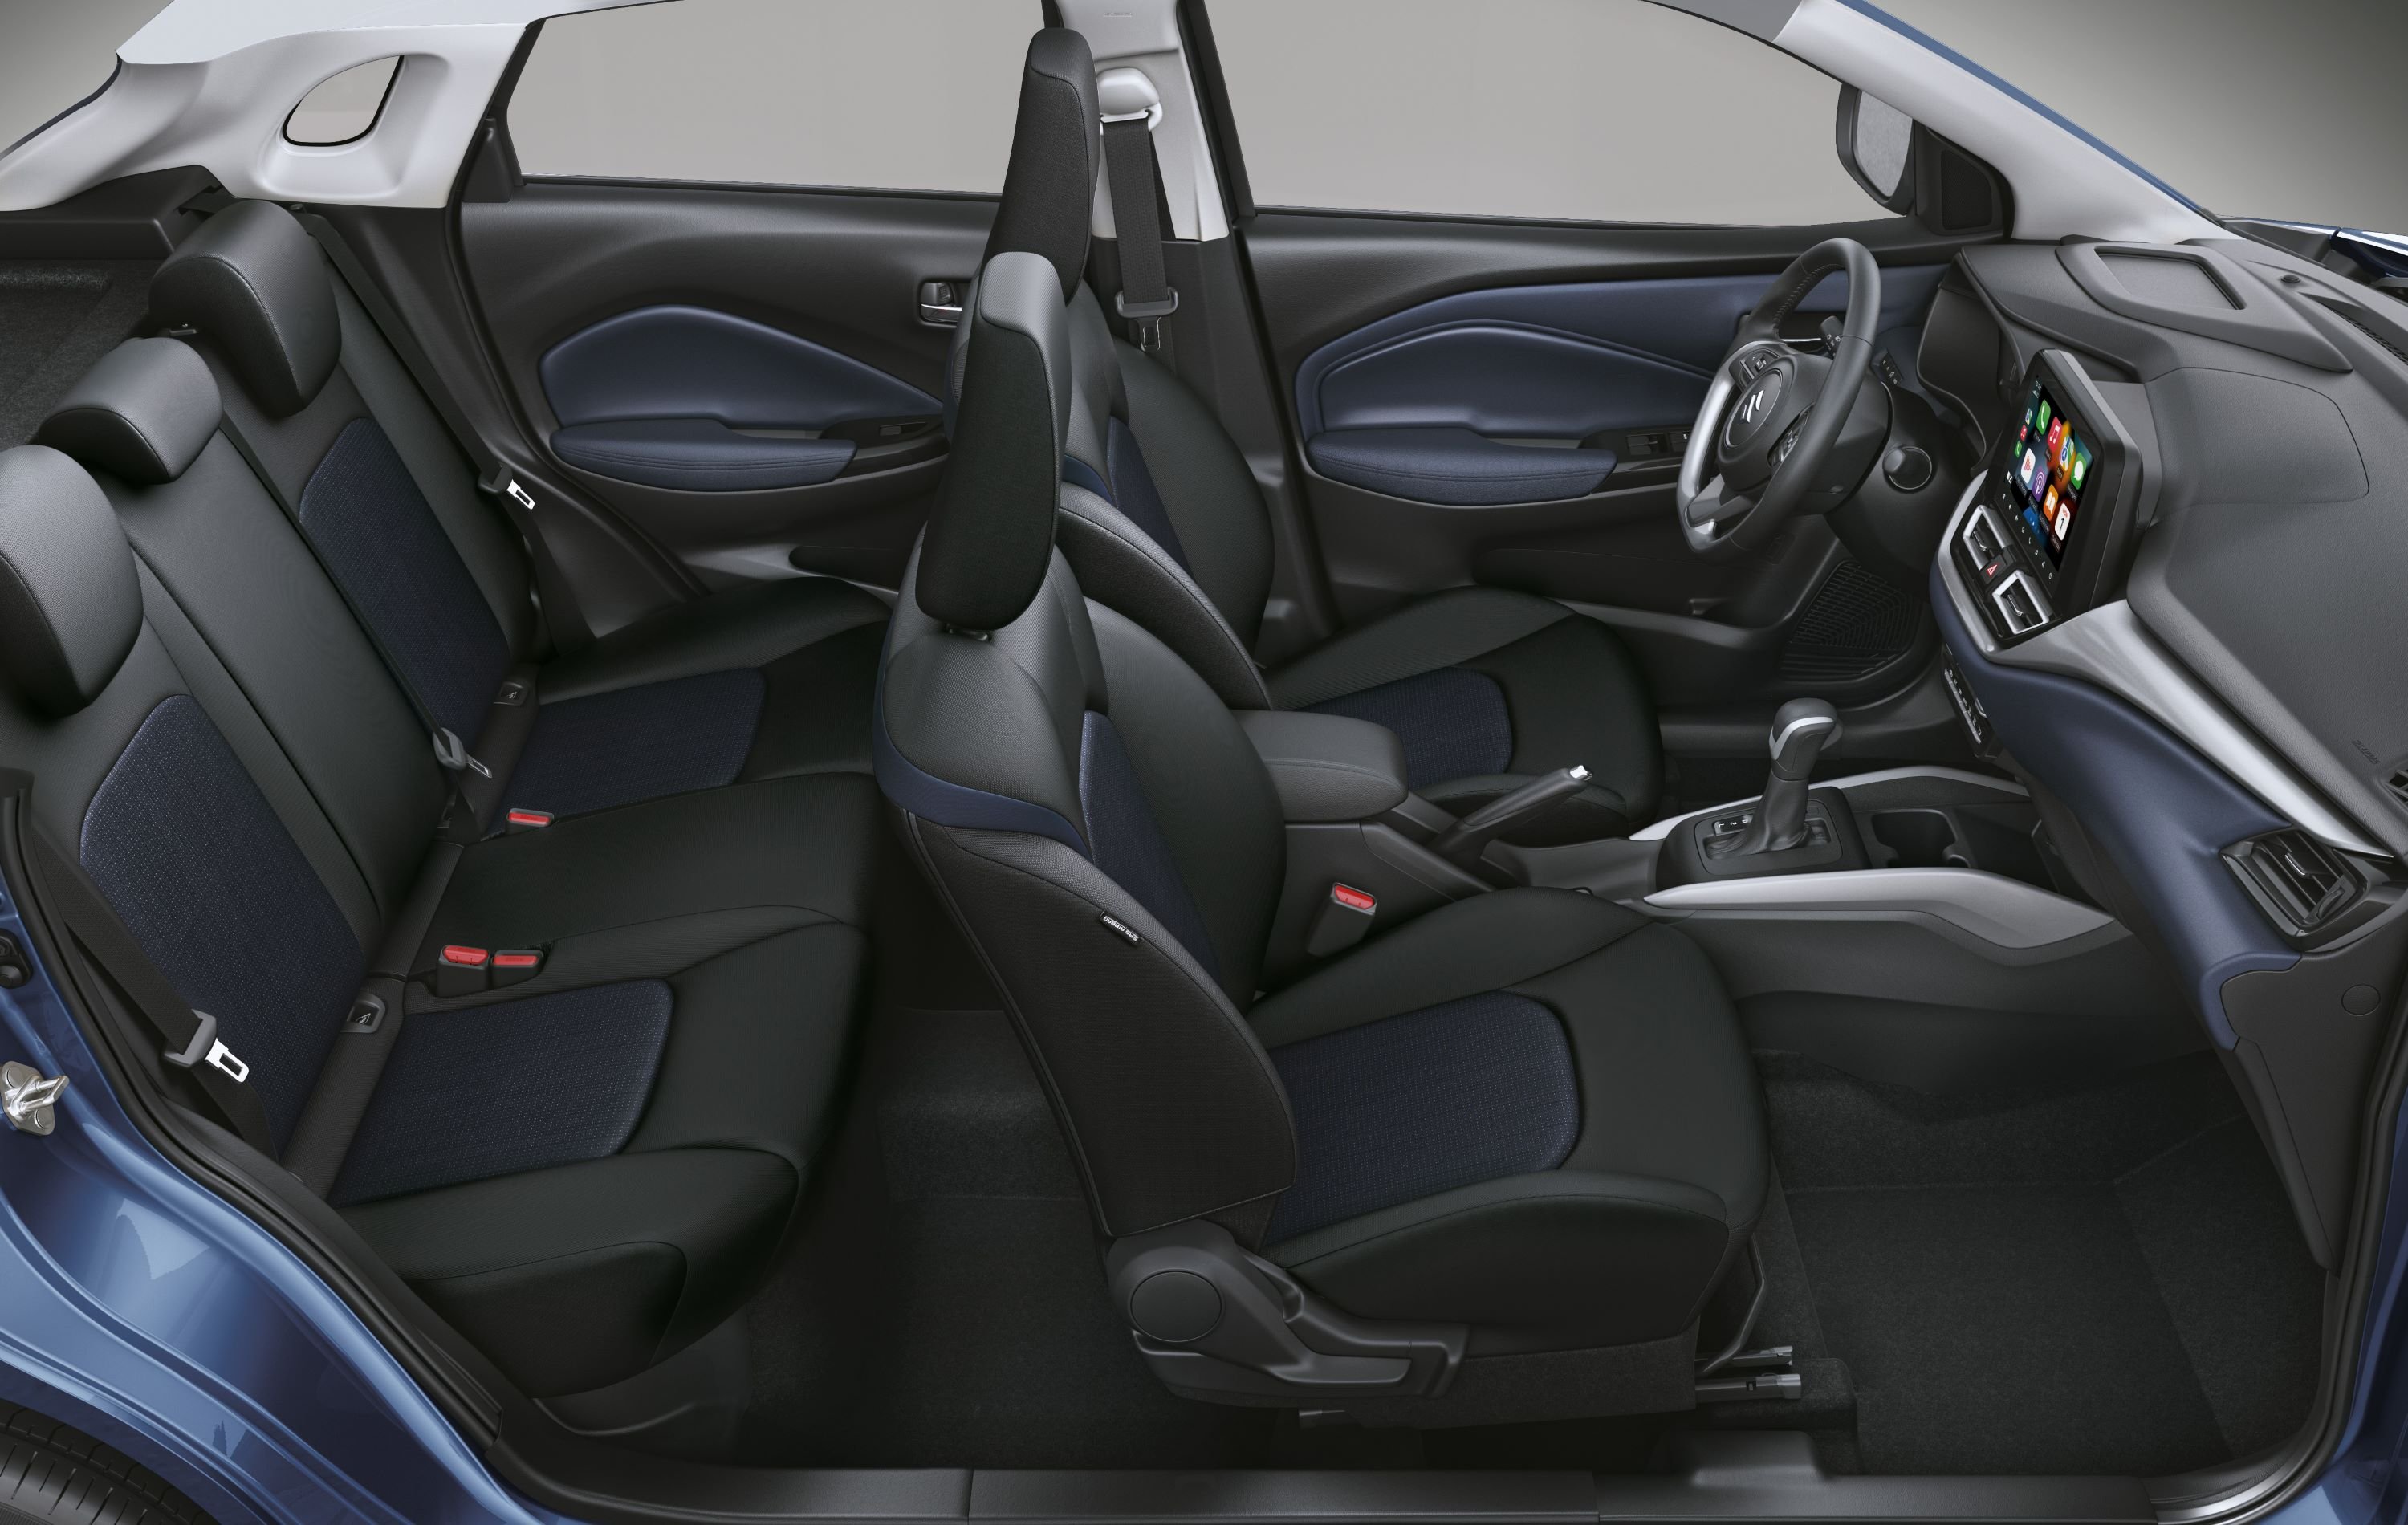 Suzuki Baleno interior - Seats